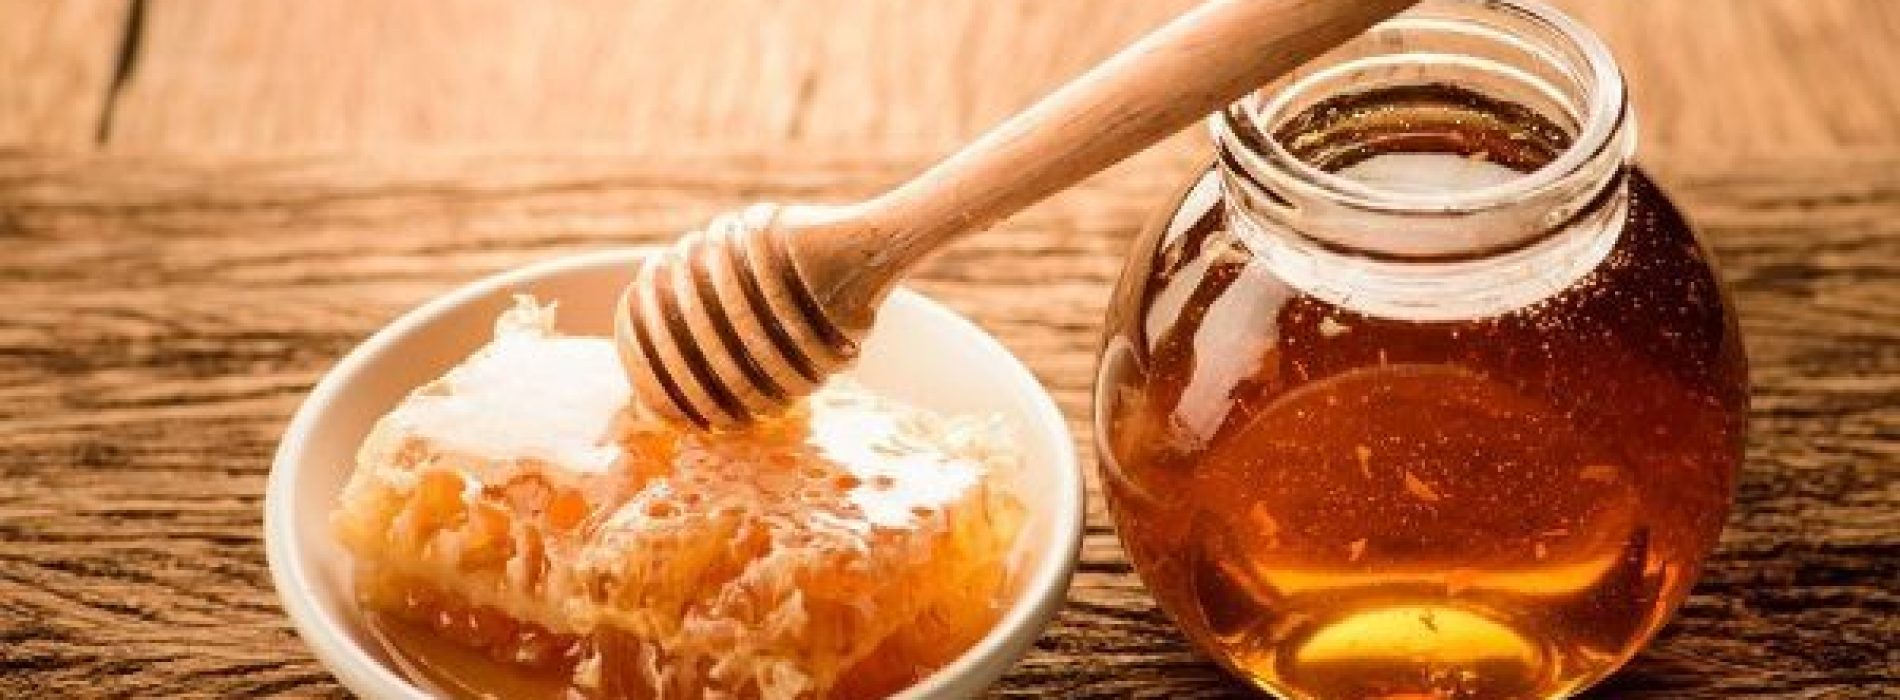 Vijf therapeutische effecten van honing bij de behandeling van wonden en infecties